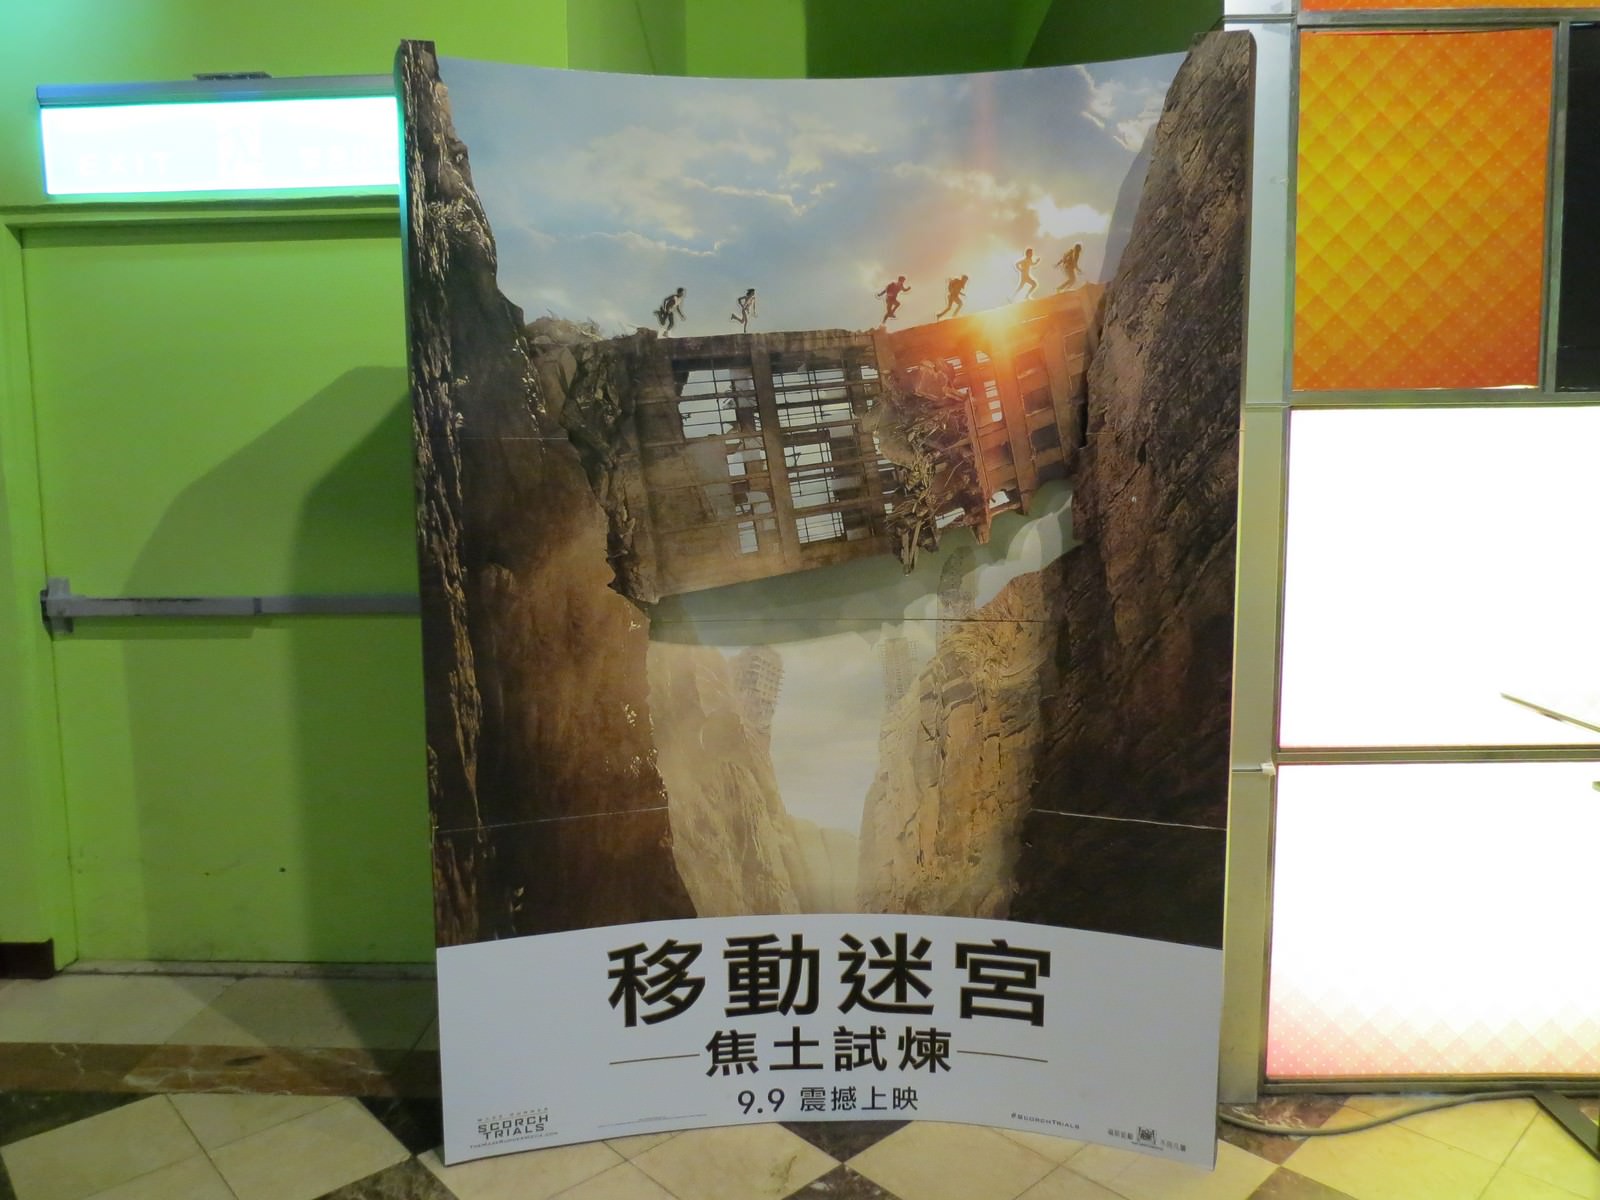 Movie, Maze Runner: The Scorch Trials(美國, 2015) / 移動迷宮：焦土試煉(台灣.香港) / 移动迷宫2(中國), 廣告看板, 哈拉影城